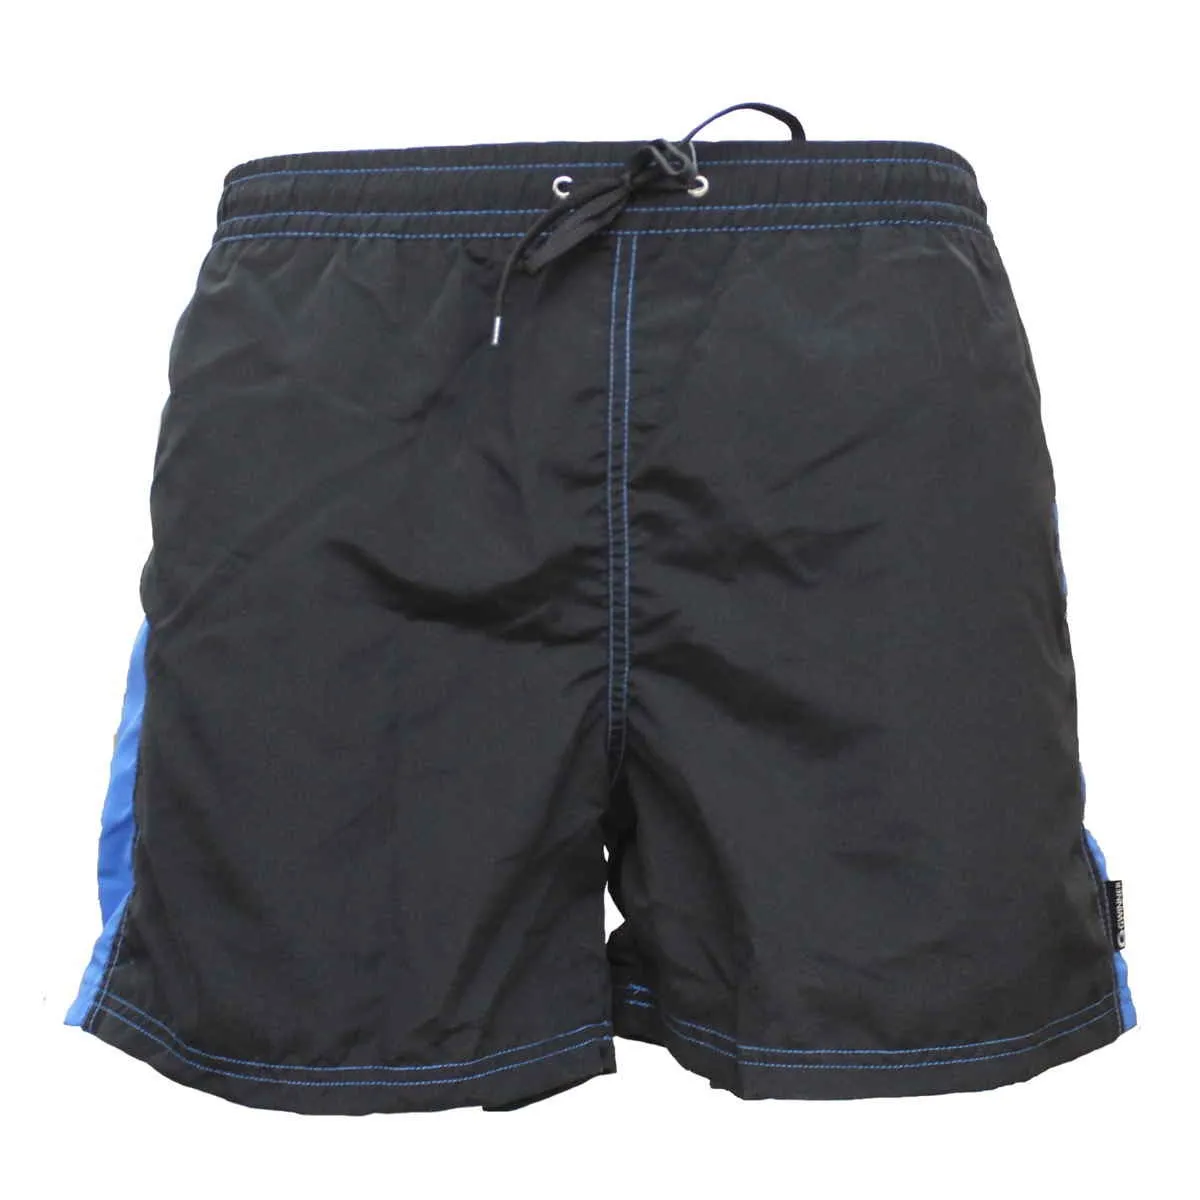 Swimming trunks - Hugo swimming trunks black/blue